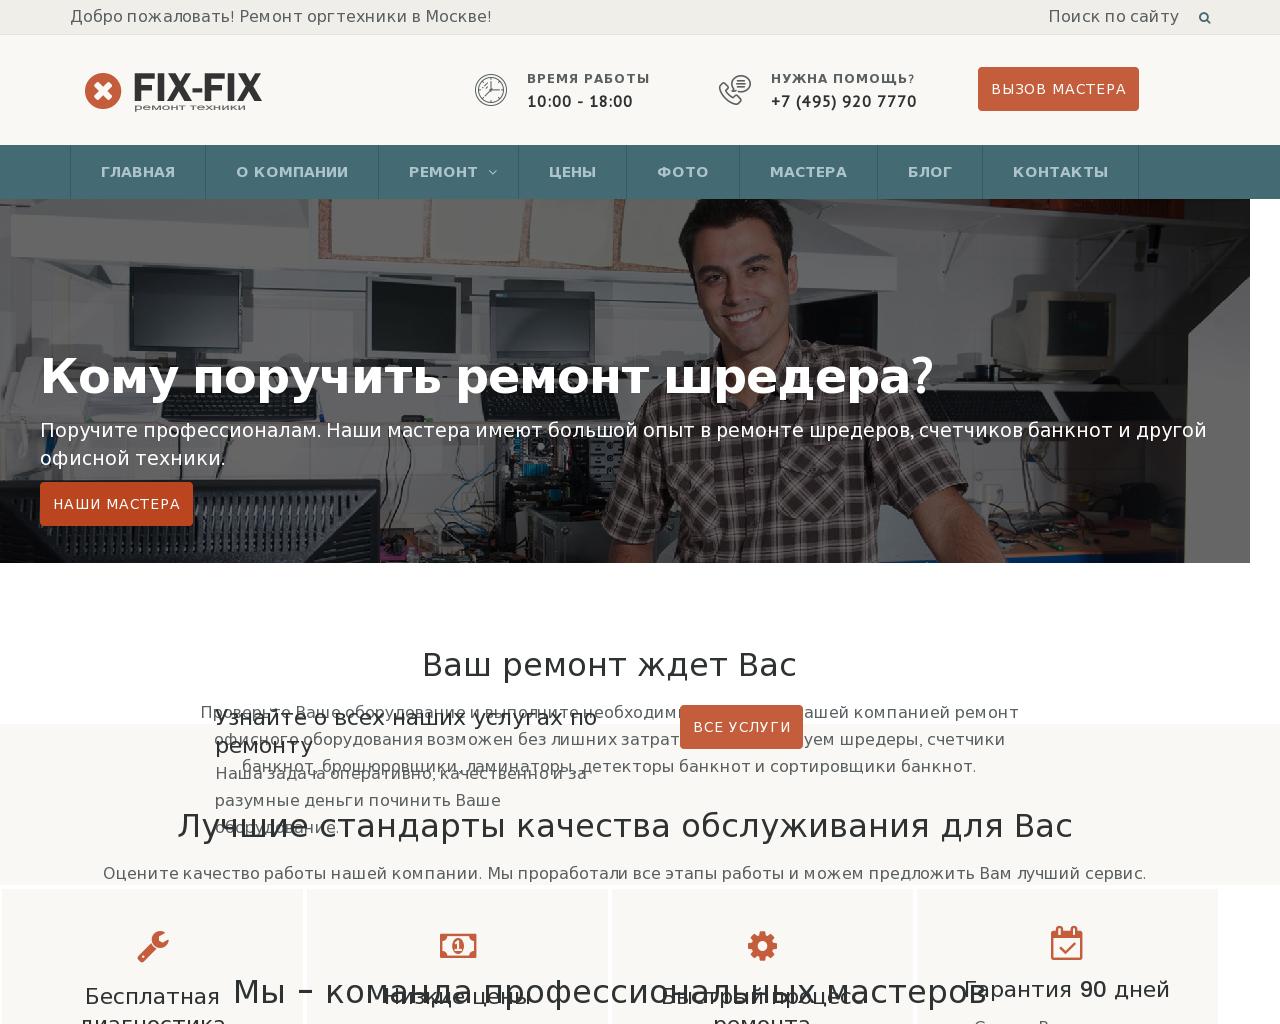 Изображение сайта fix-fix.ru в разрешении 1280x1024